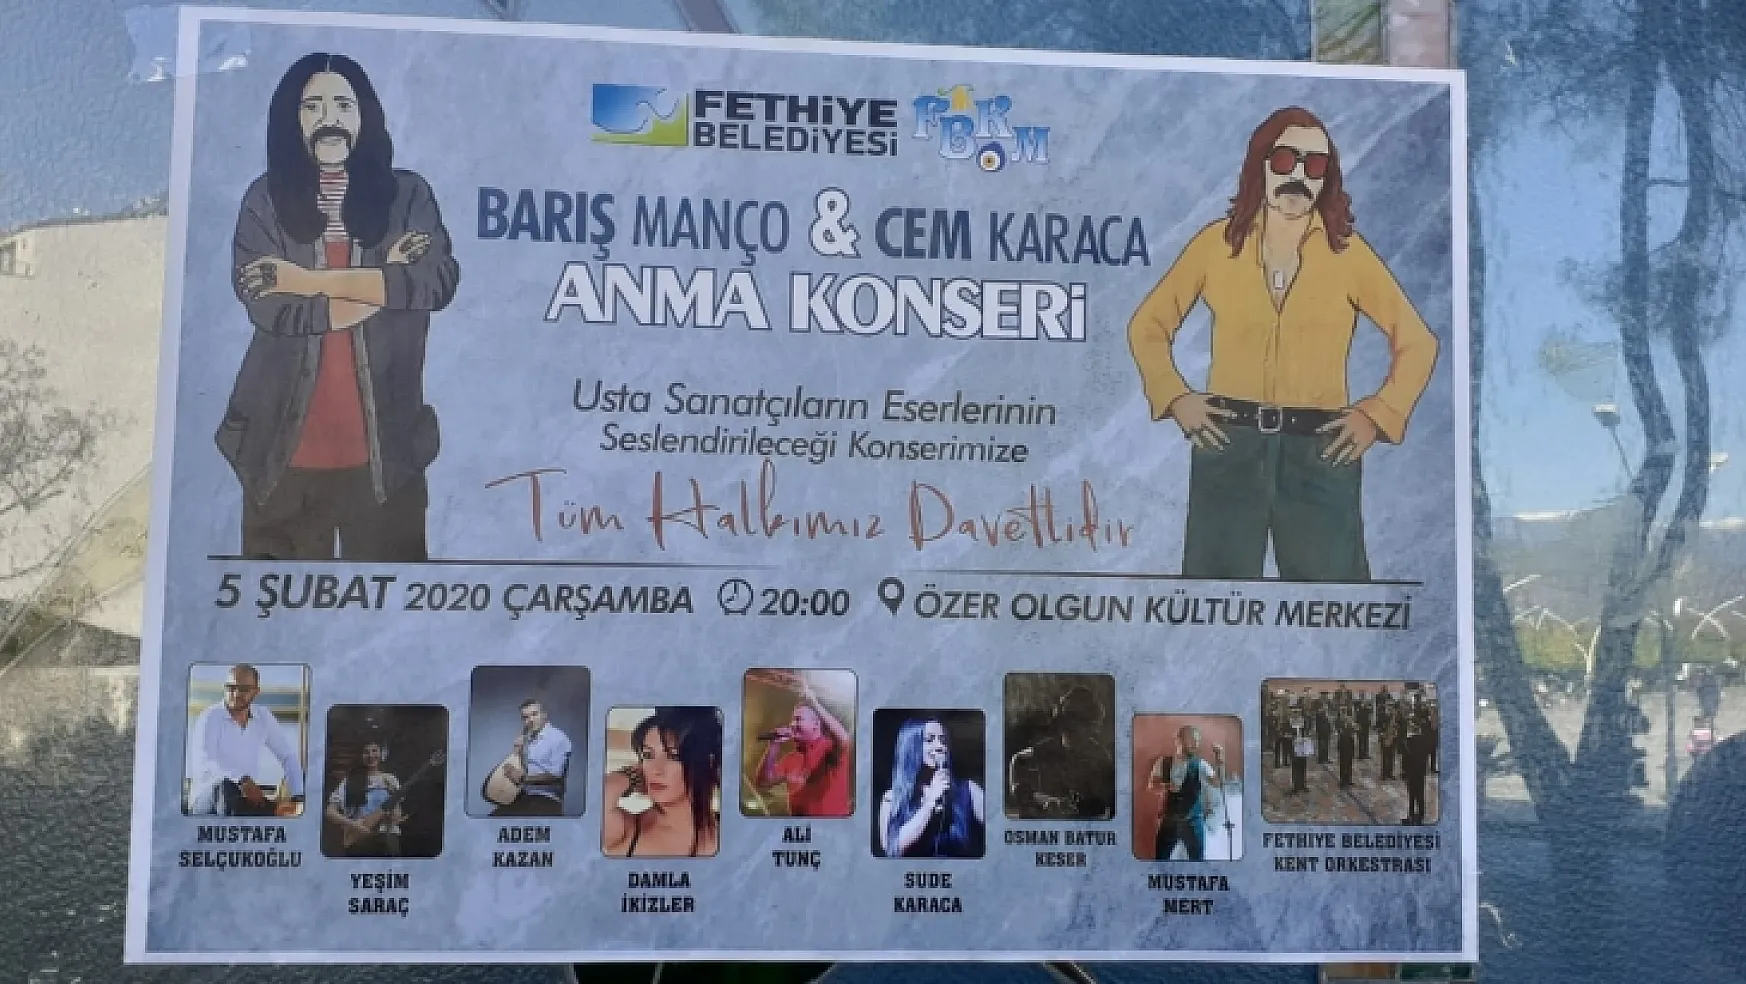 Fethiye Belediyesinden Şehitlere Saygı, Konser Ertelendi!